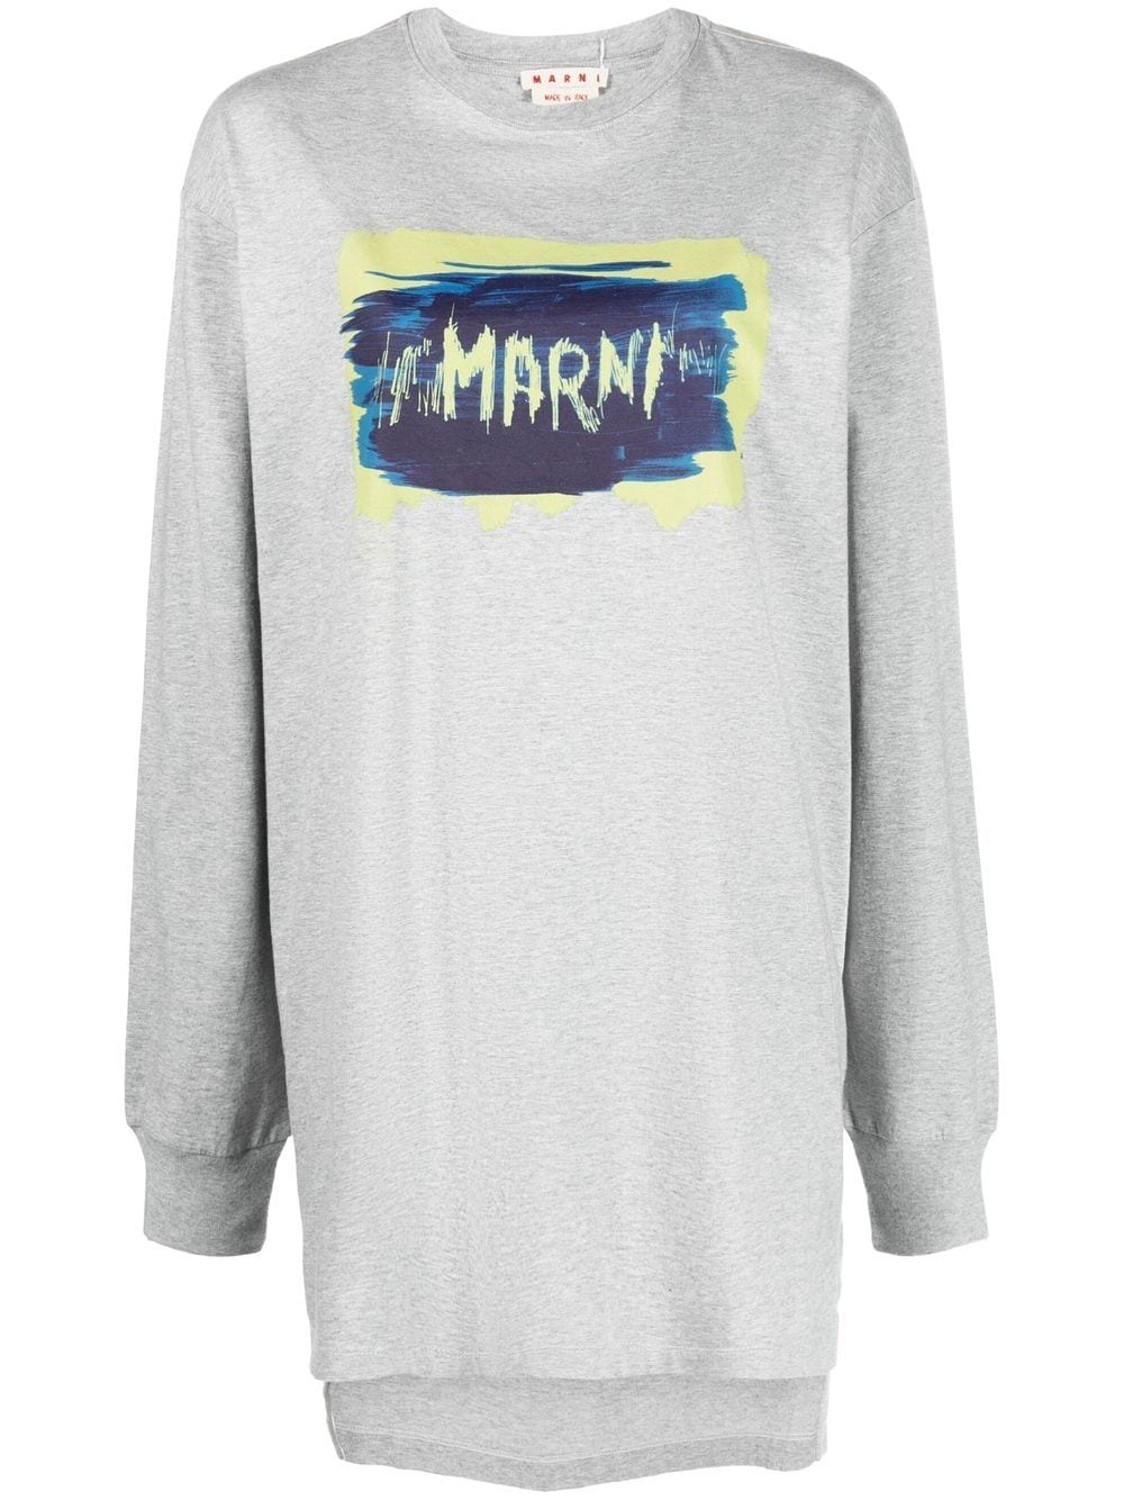 shop Marni  T-shirts: T-shirts Marni, fit ampio, manica lunga, polsino, girocollo, logo stampato sul davanti, spacchi laterali.

Composizione: 100% cotone. number 2526